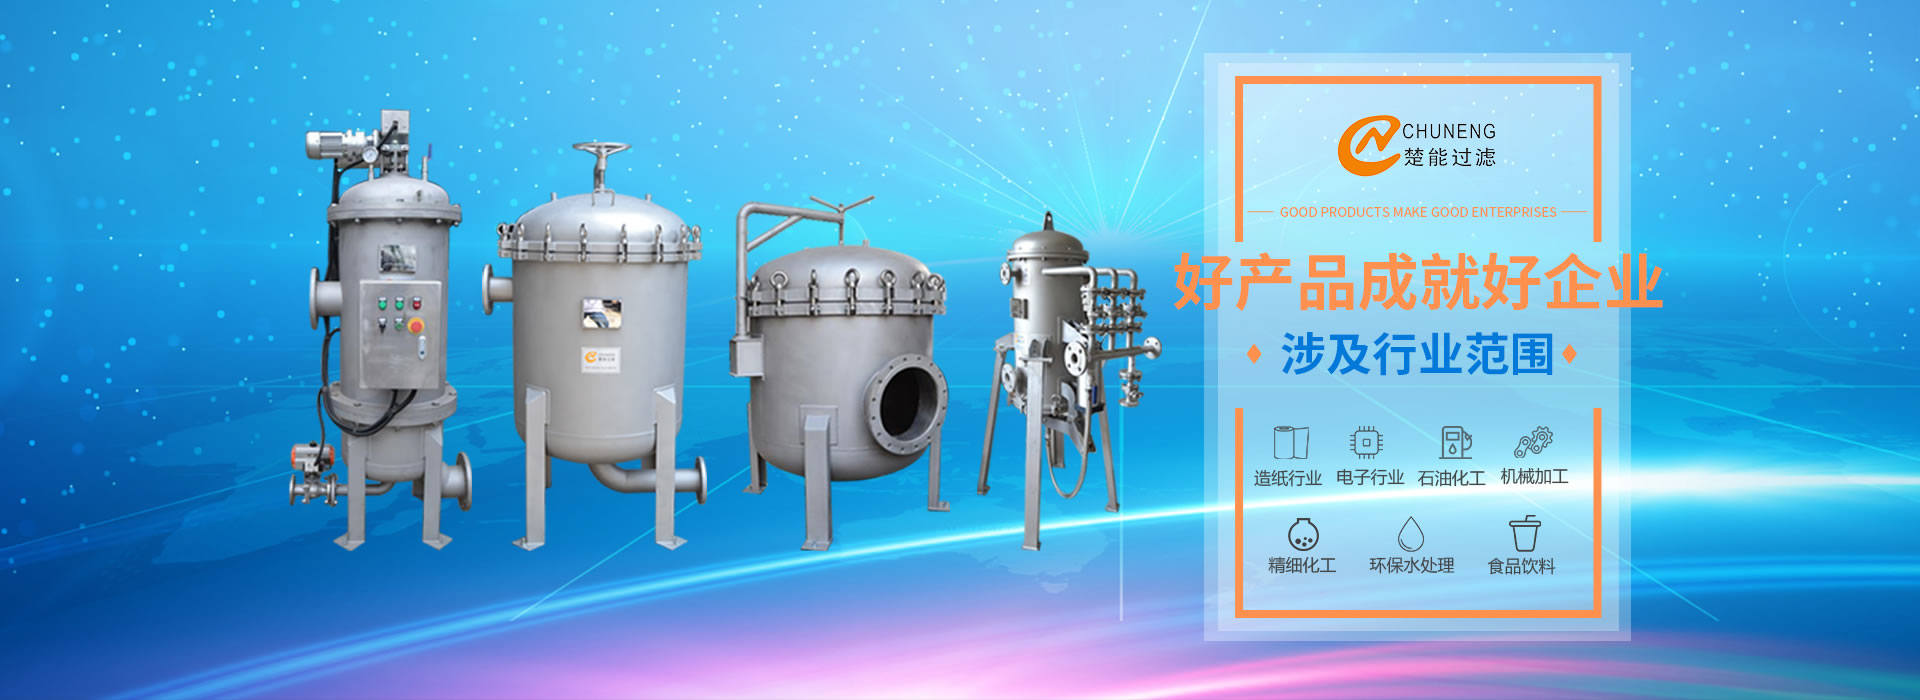 上海楚能工業過濾係統有限公司是集研發、製造、銷售/服務於一體的過濾設備與過濾元件專業生產廠家